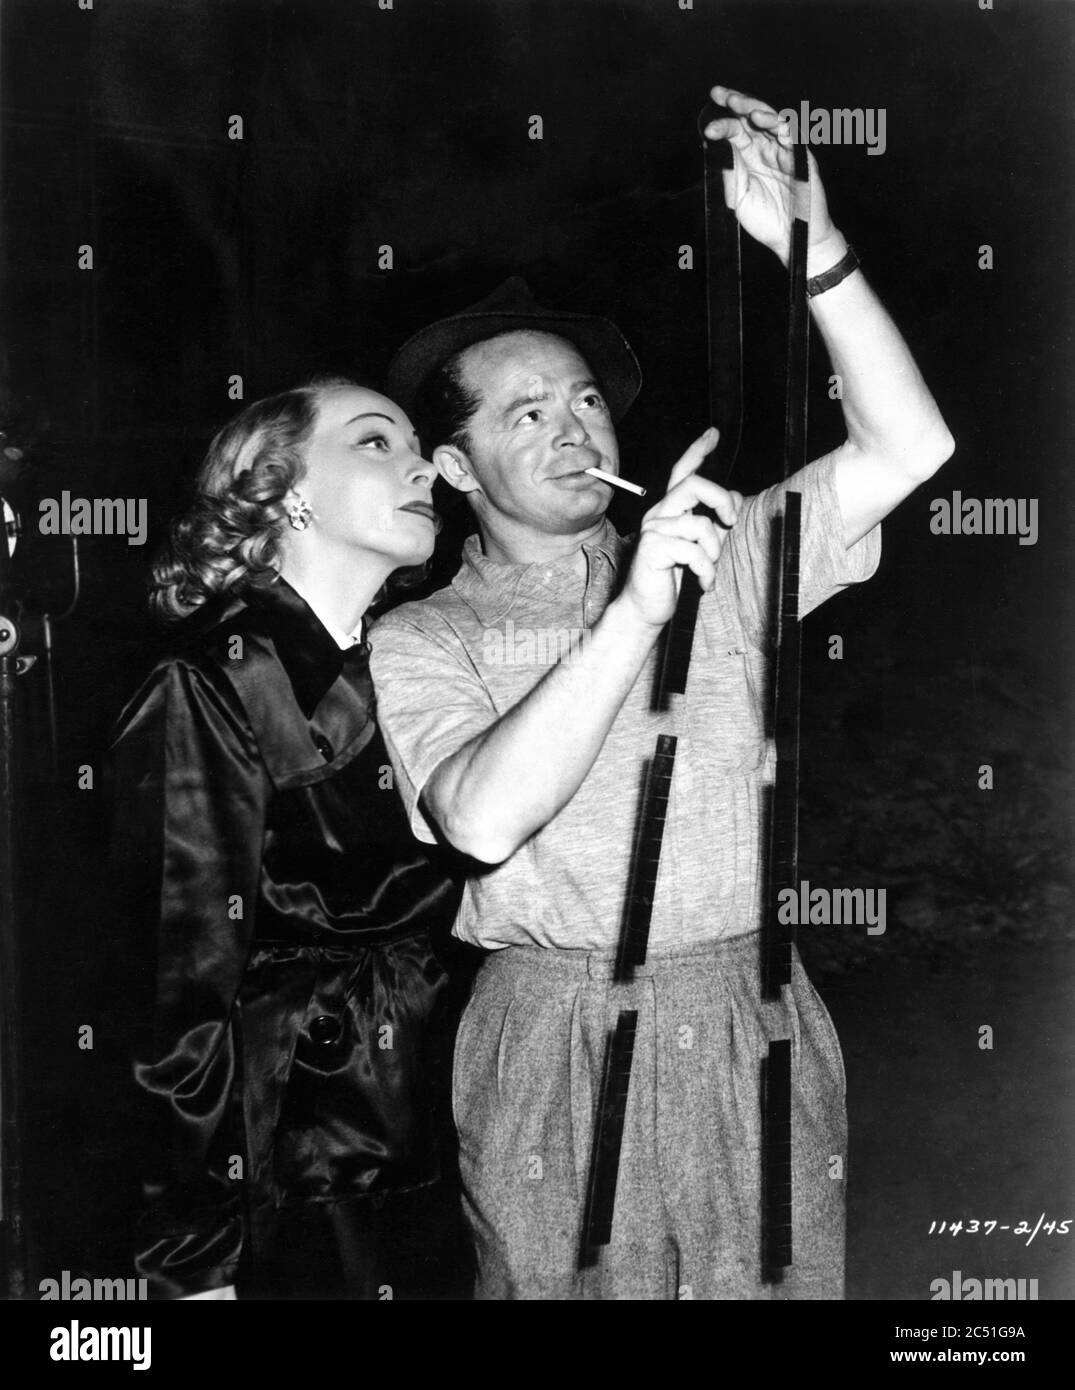 MARLENE DIETRICH e il direttore BILLY WILDER sul set candid durante la ripresa DI UN AFFARE STRANIERO 1948 Paramount Pictures Foto Stock